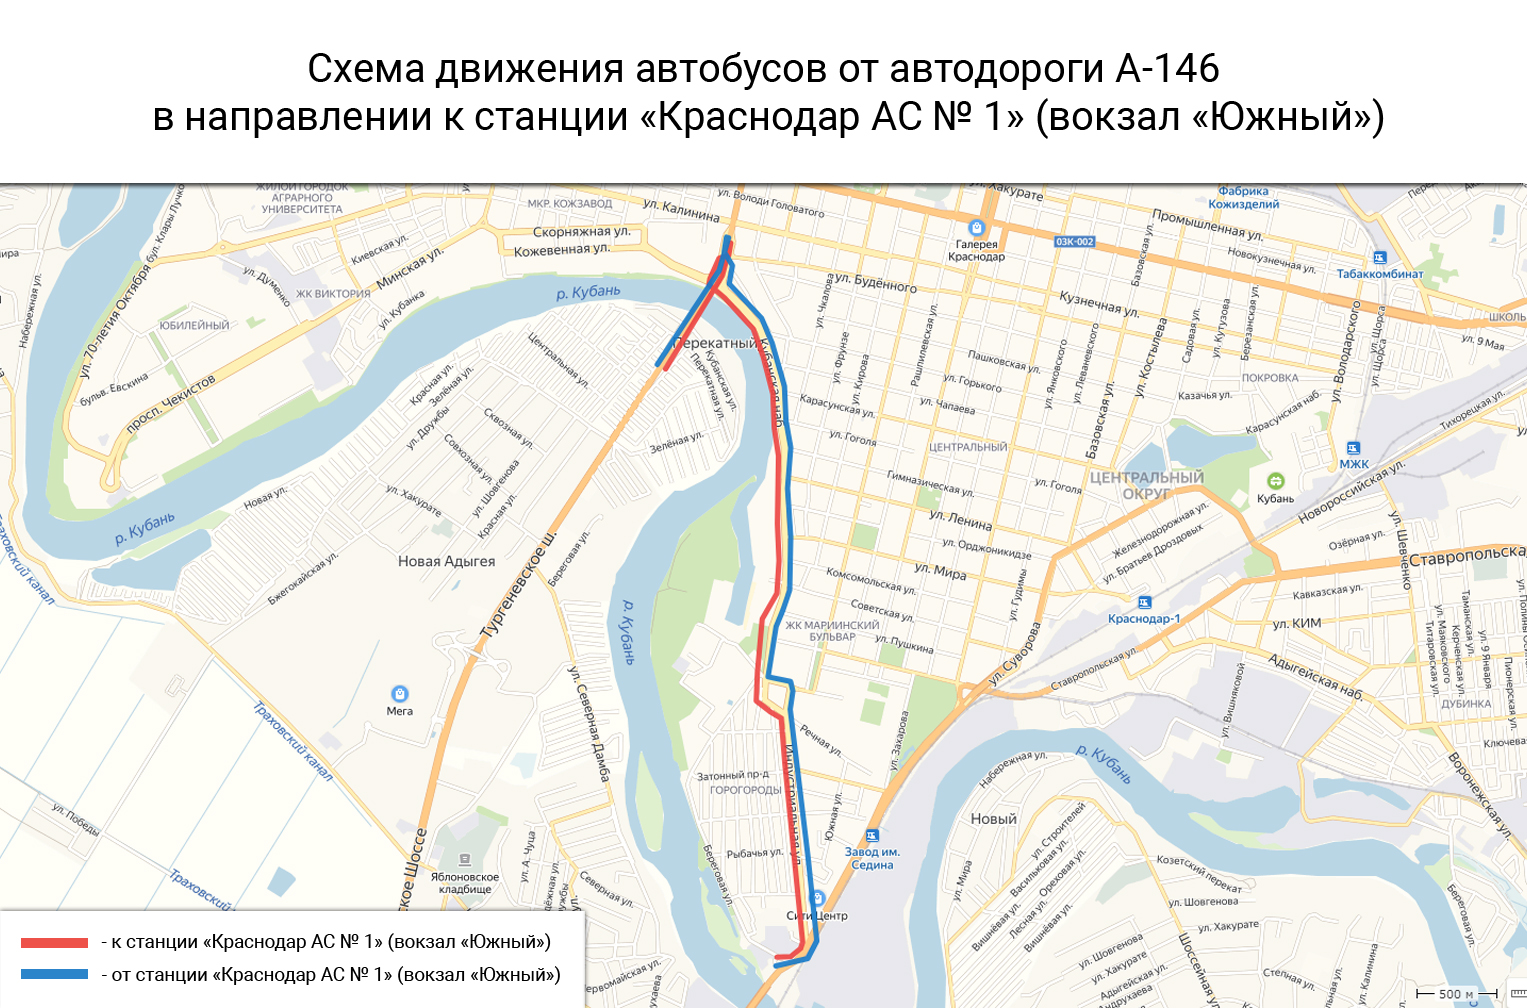 Пост-мост: что изменилось в Краснодаре после закрытия Яблоновского моста